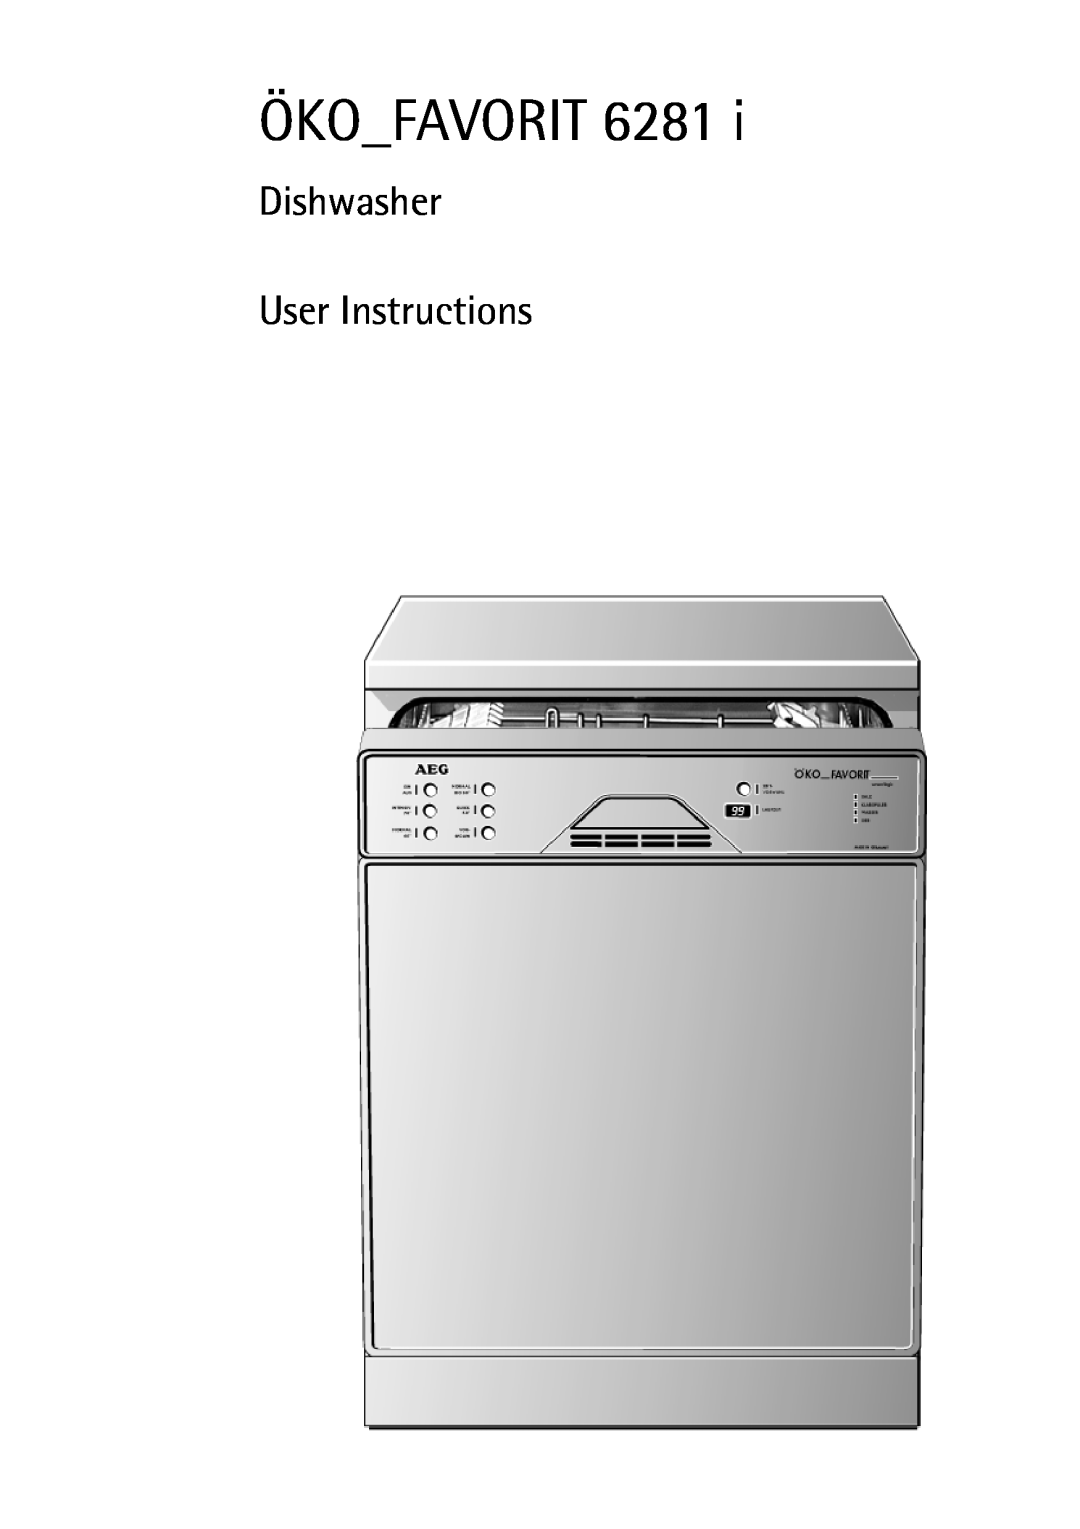 AEG 6281 I manual Ökofavorit, Dishwasher User Instructions 